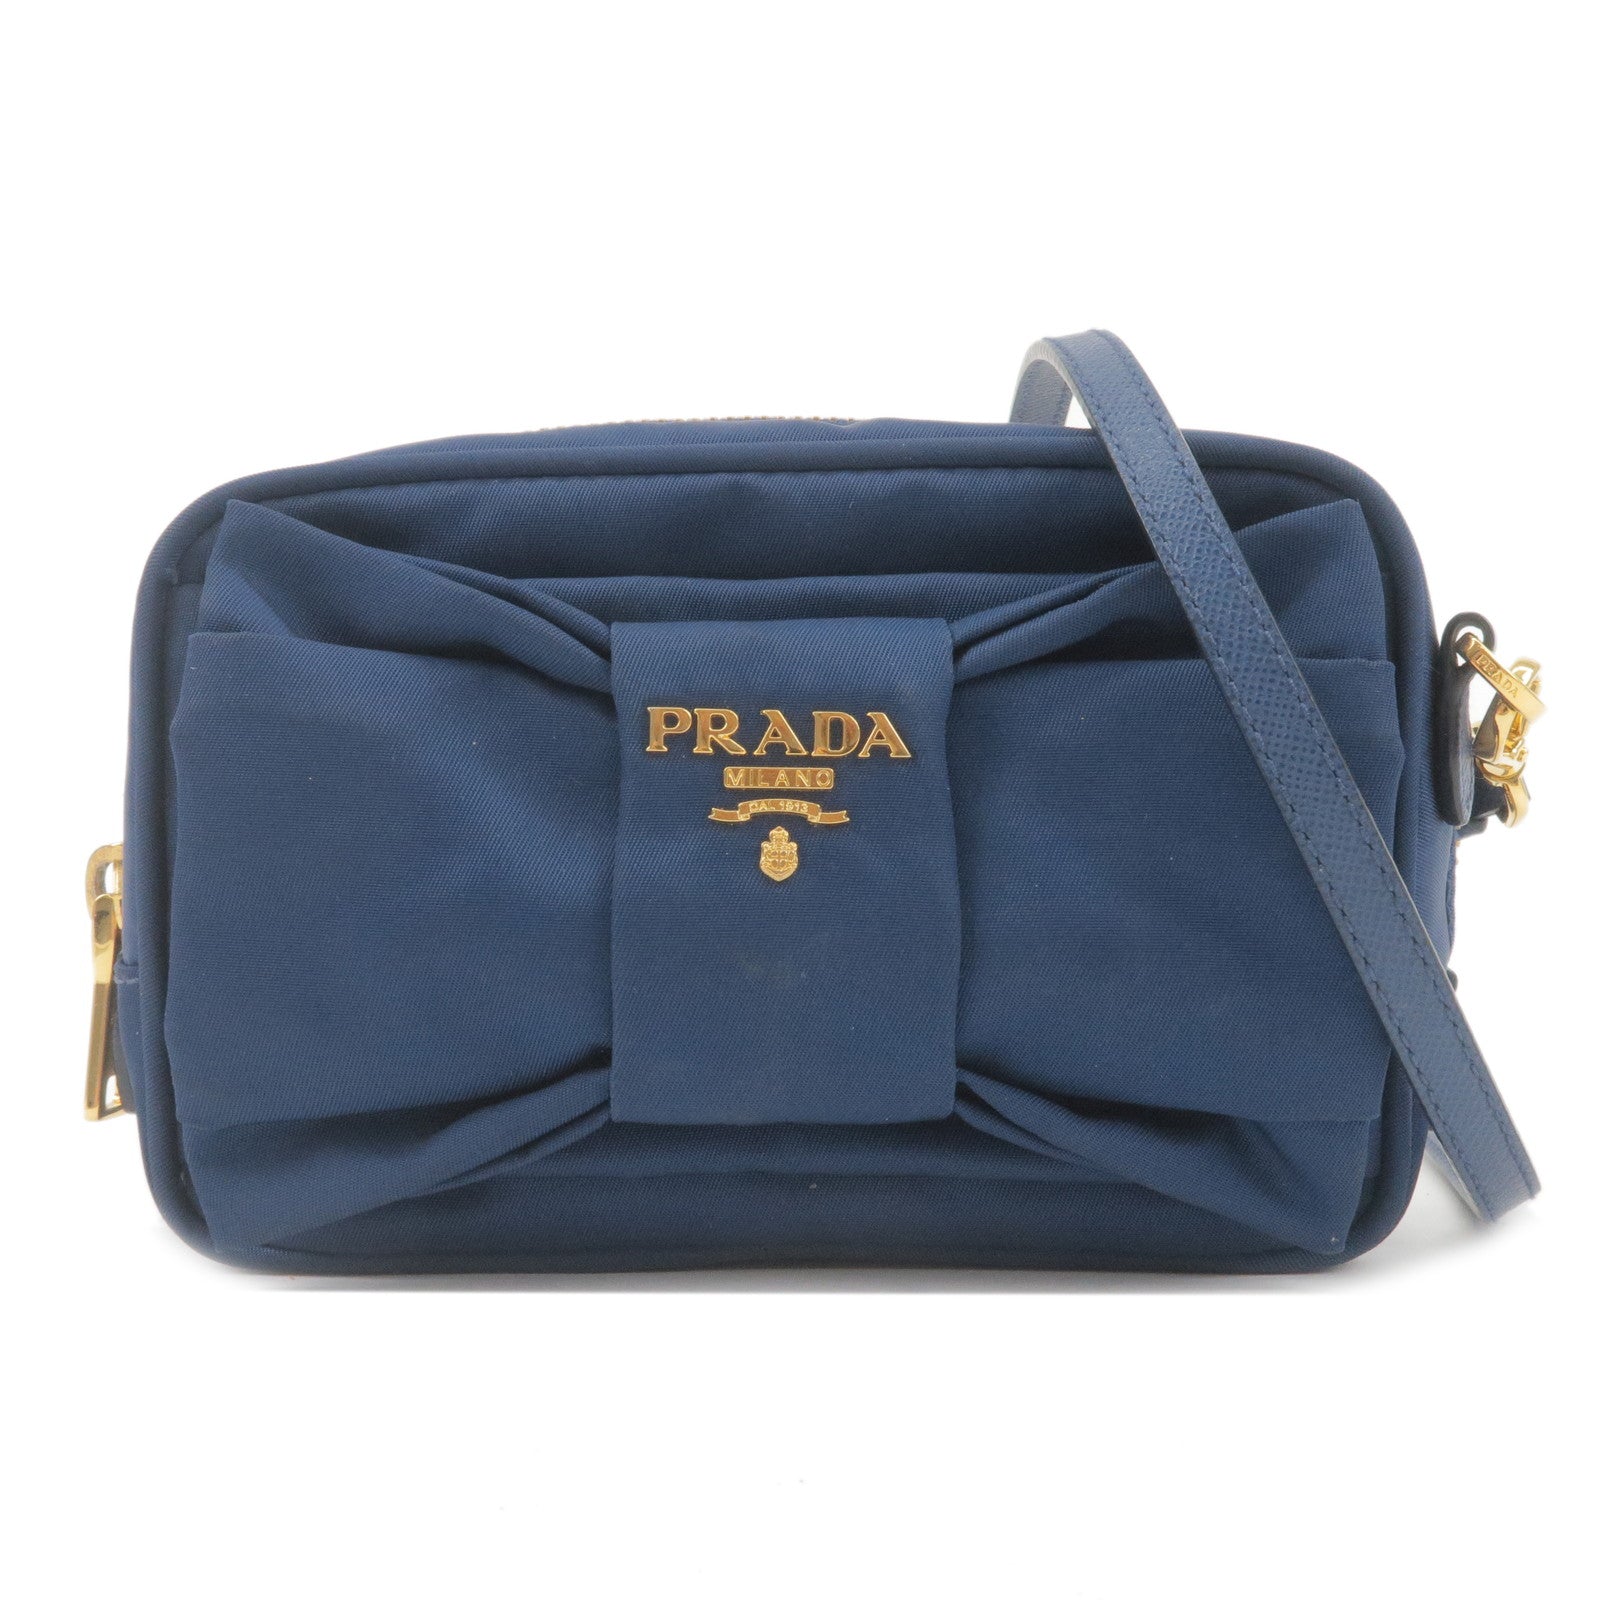 PRADA-Logo-Nylon-Leather-Ribbon-Shoulder-Bag-Navy-1NF727